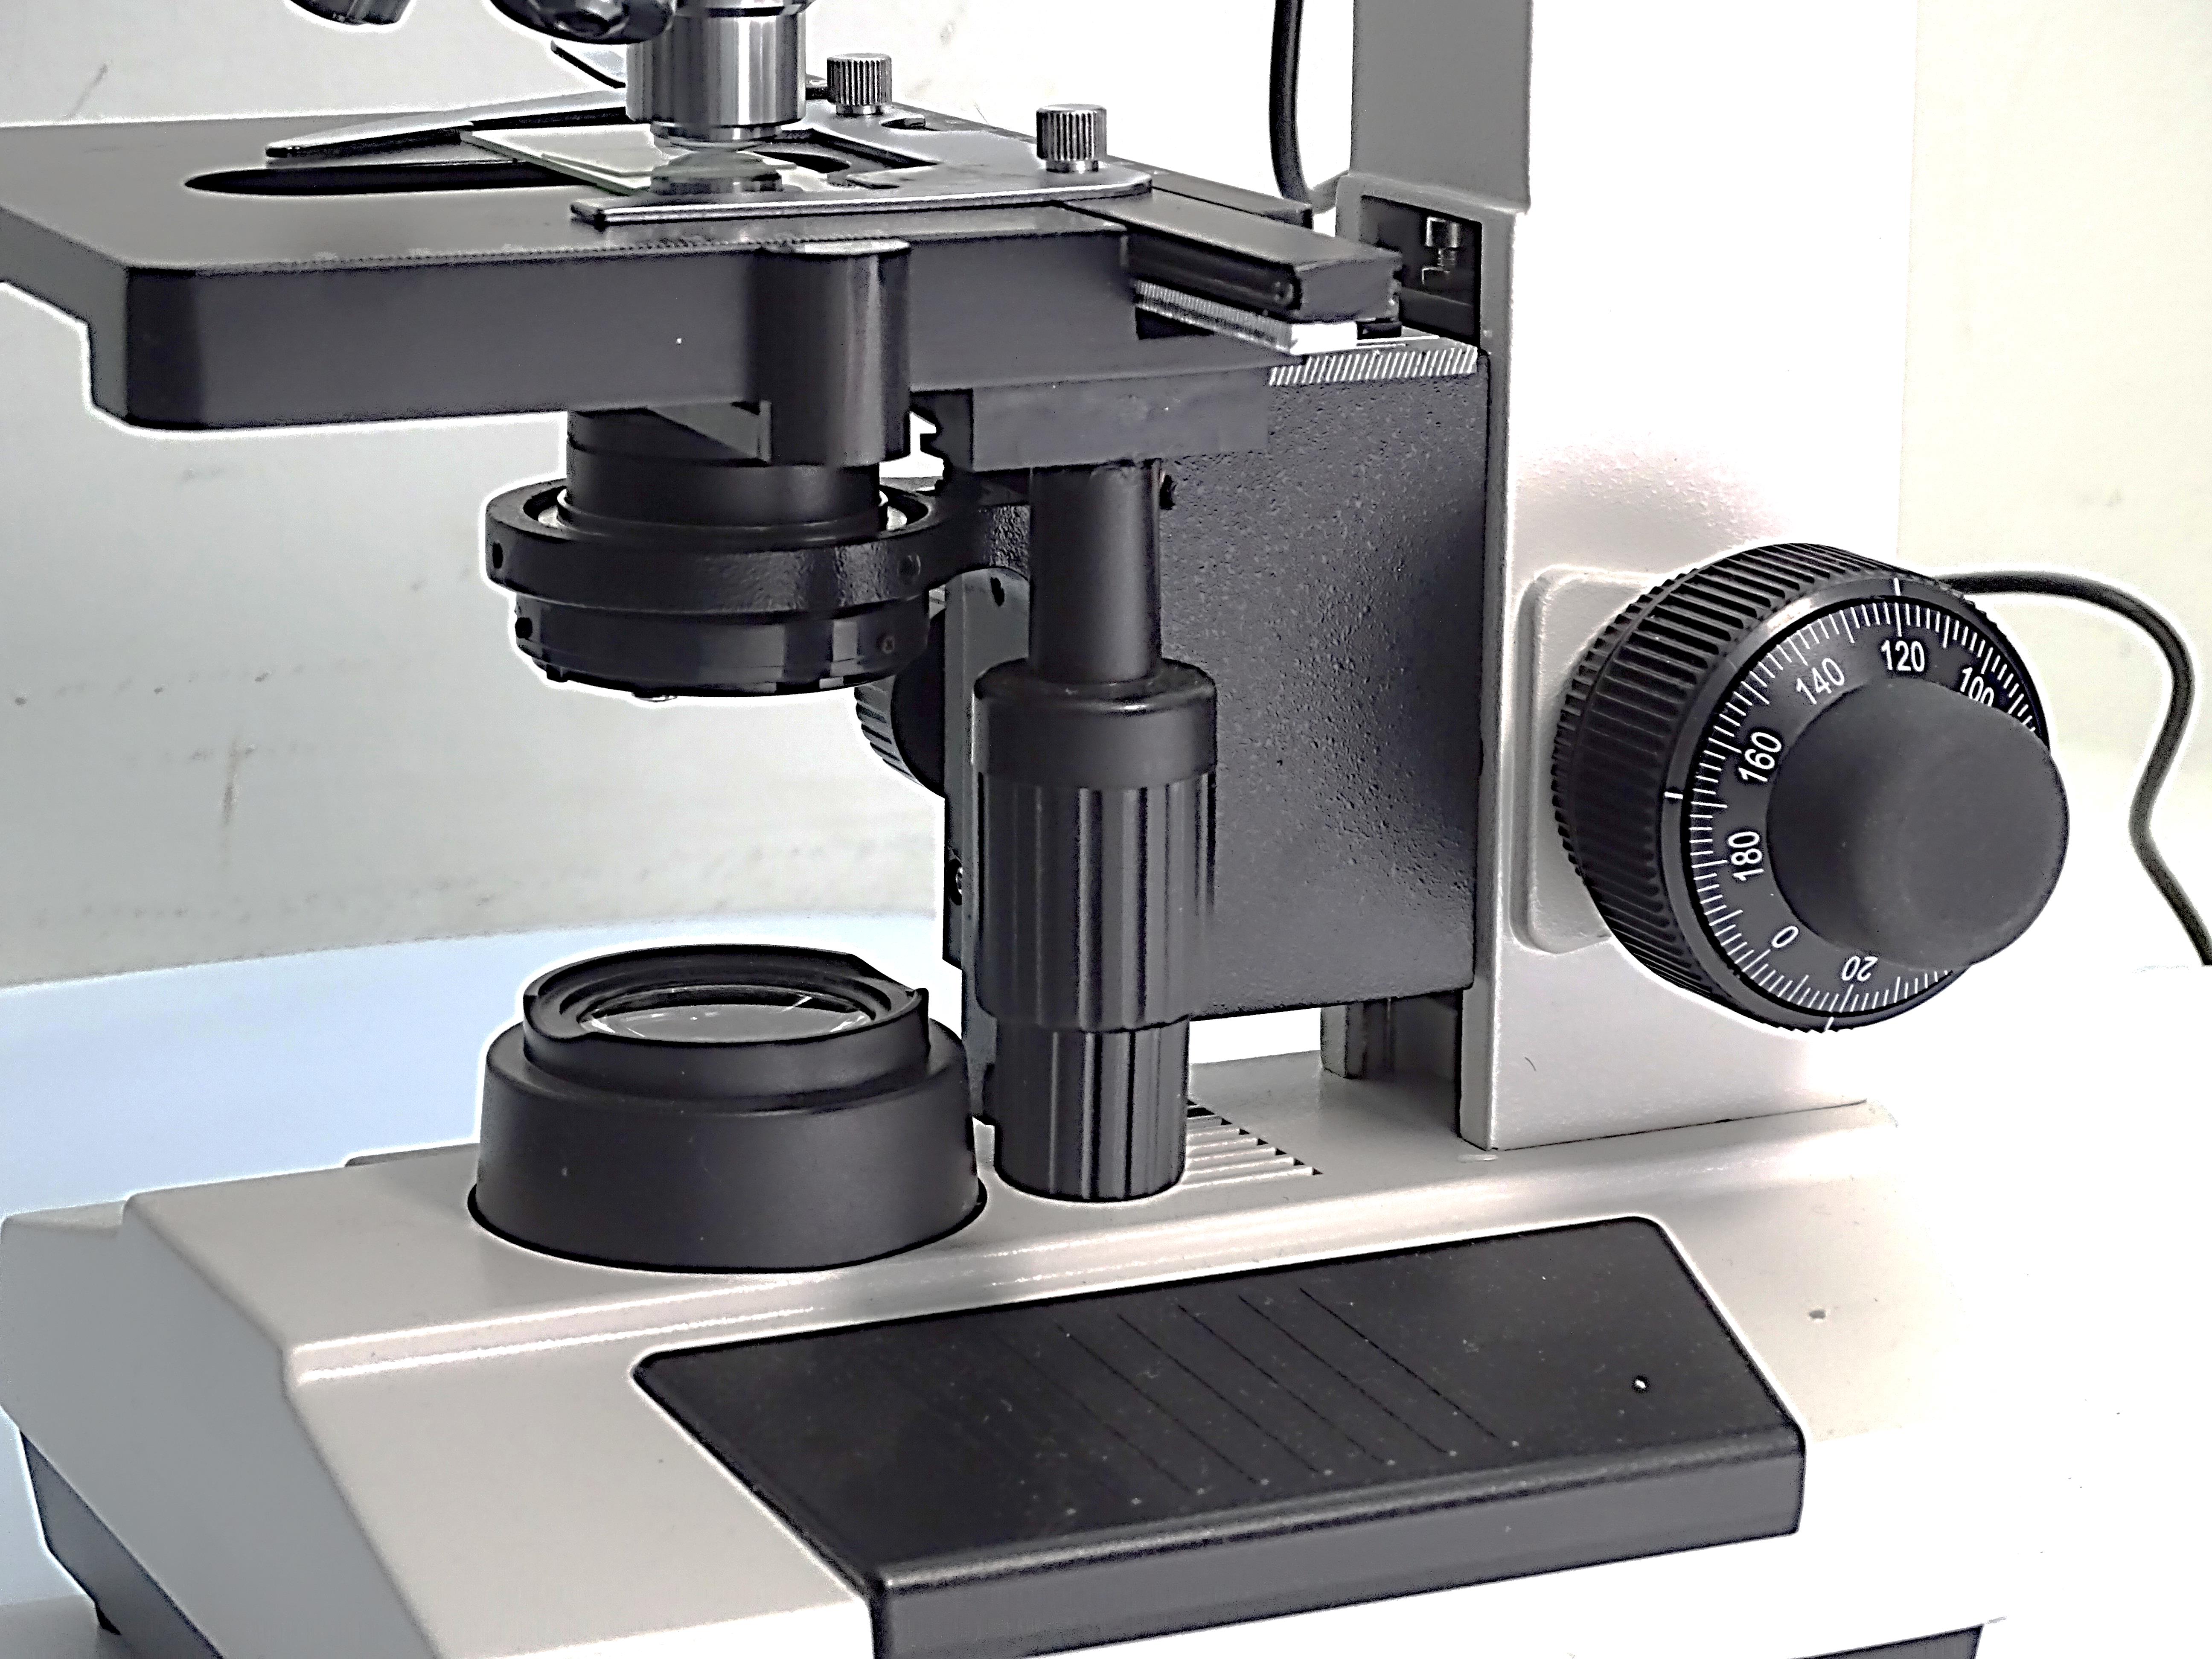 tl_files/2020/Microscopio digital sistema de iluminacion.jpg